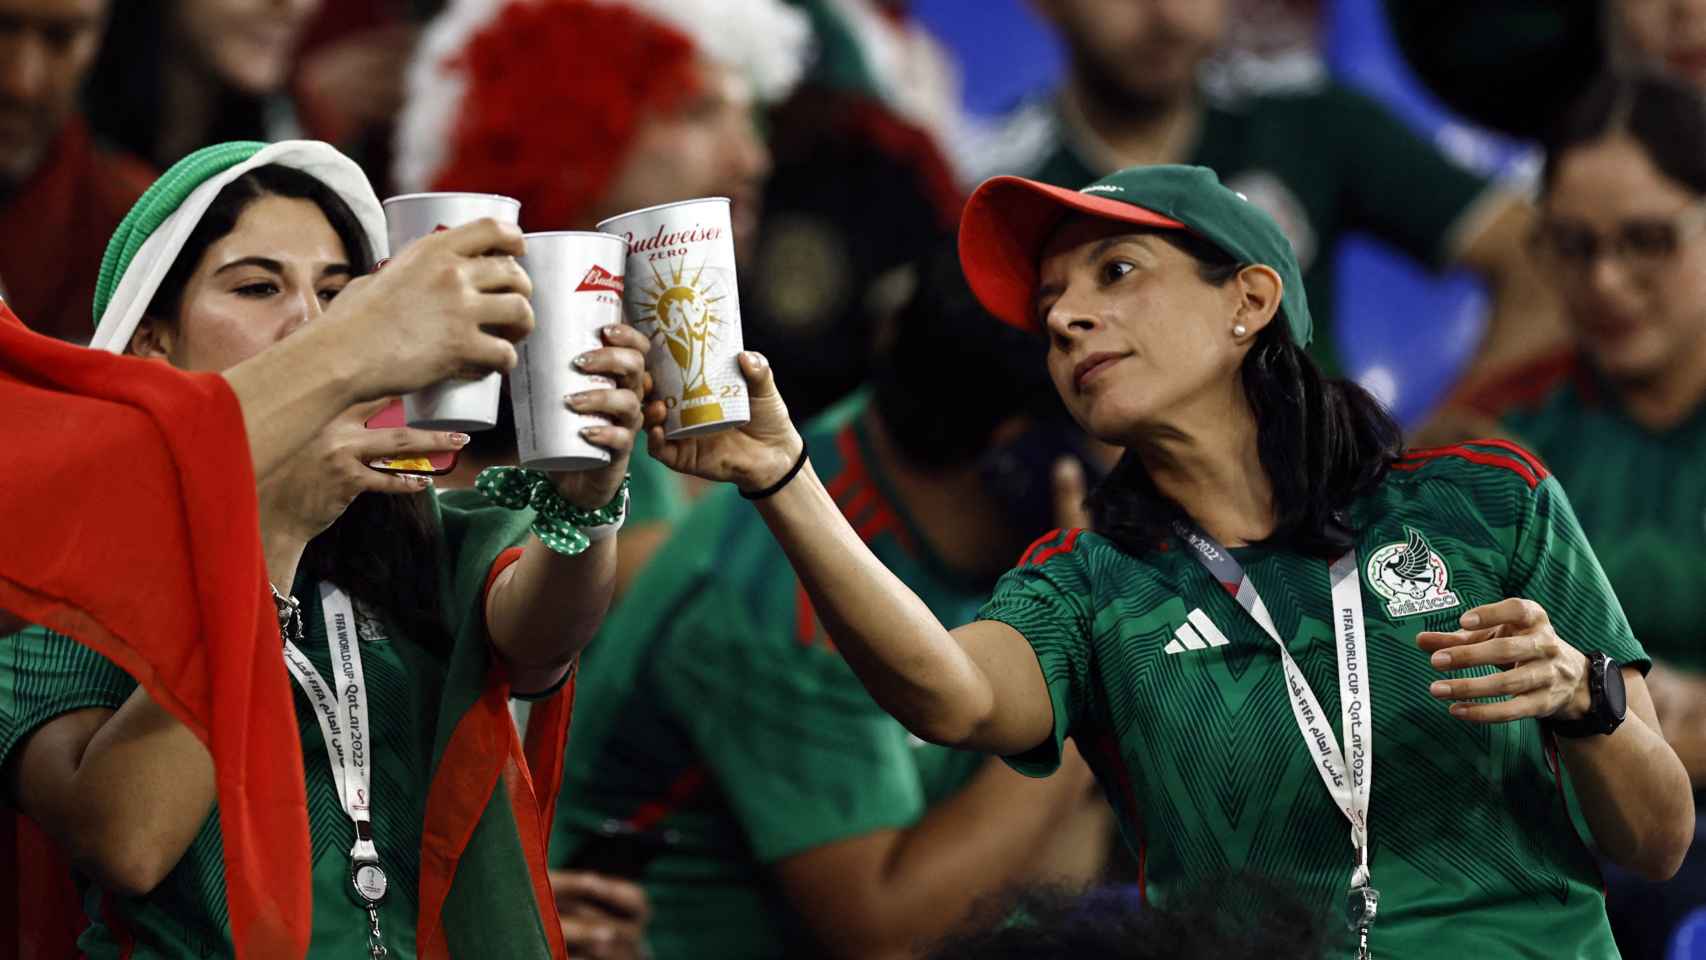 Aficionadas de la selección de México durante el Mundial de Qatar 2022 brindando con Budweiser Zero